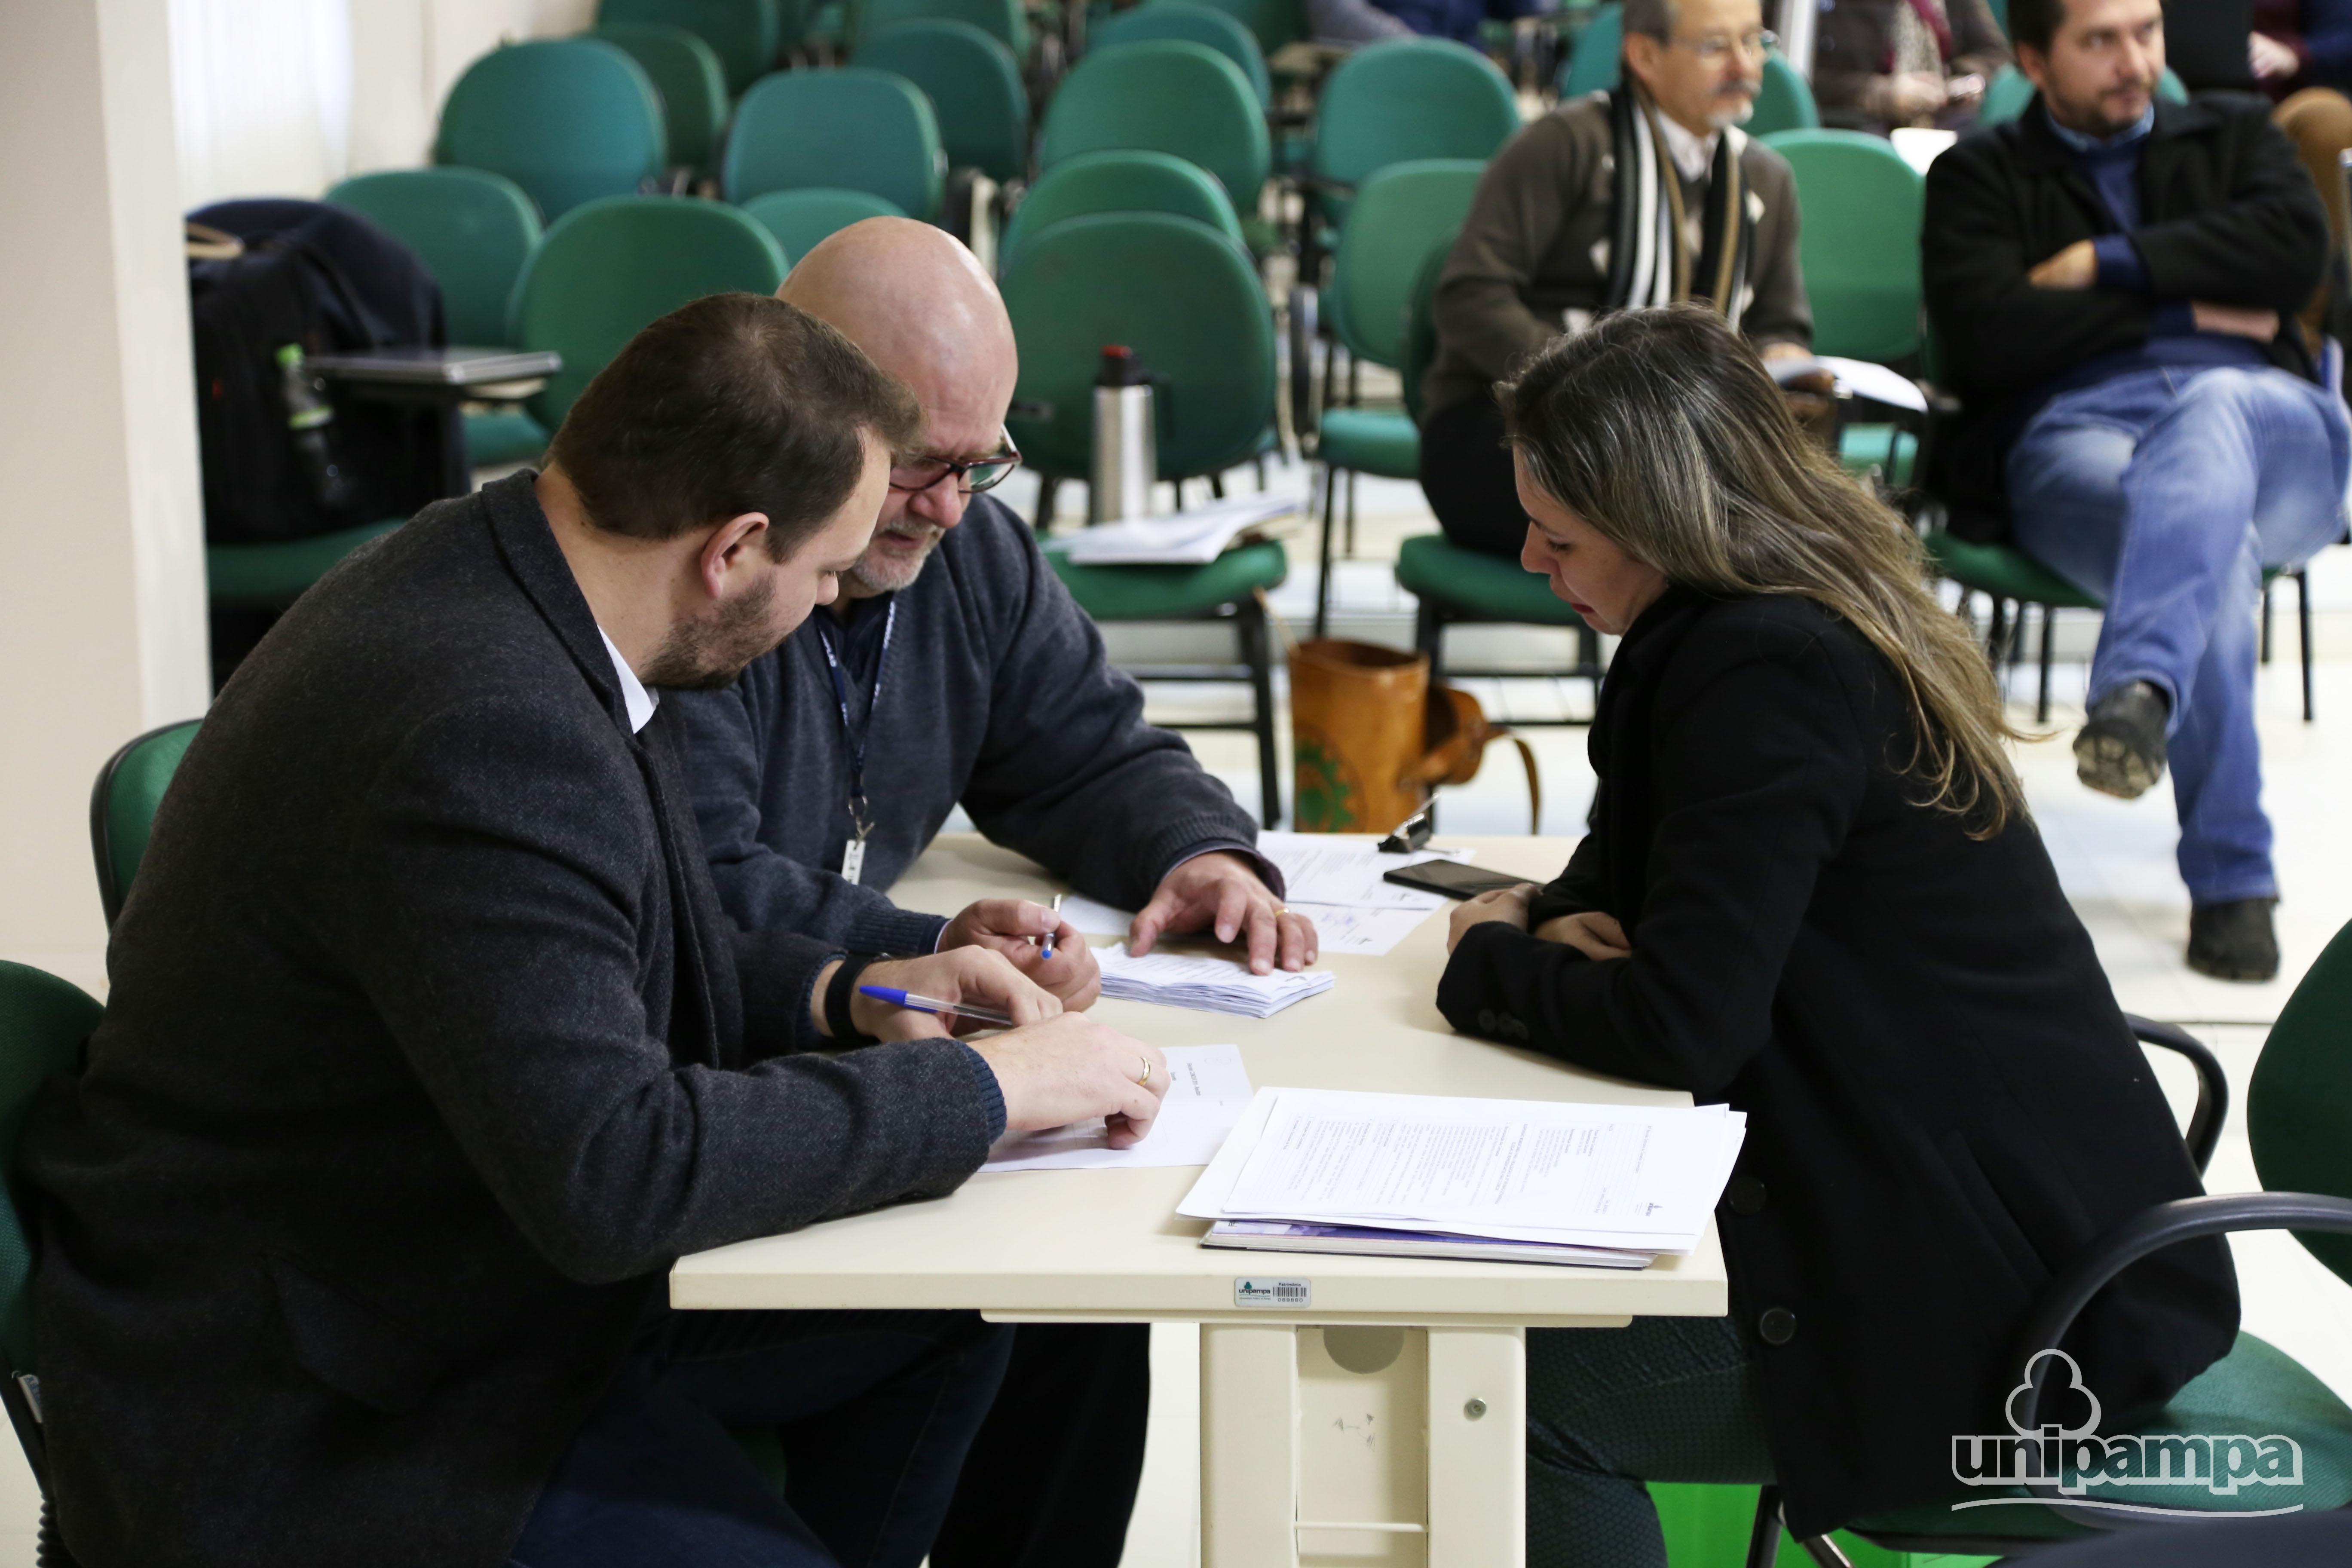 na foto, três pessoas fazem a contagem dos votos ao Concur durante a reunião do Consuni